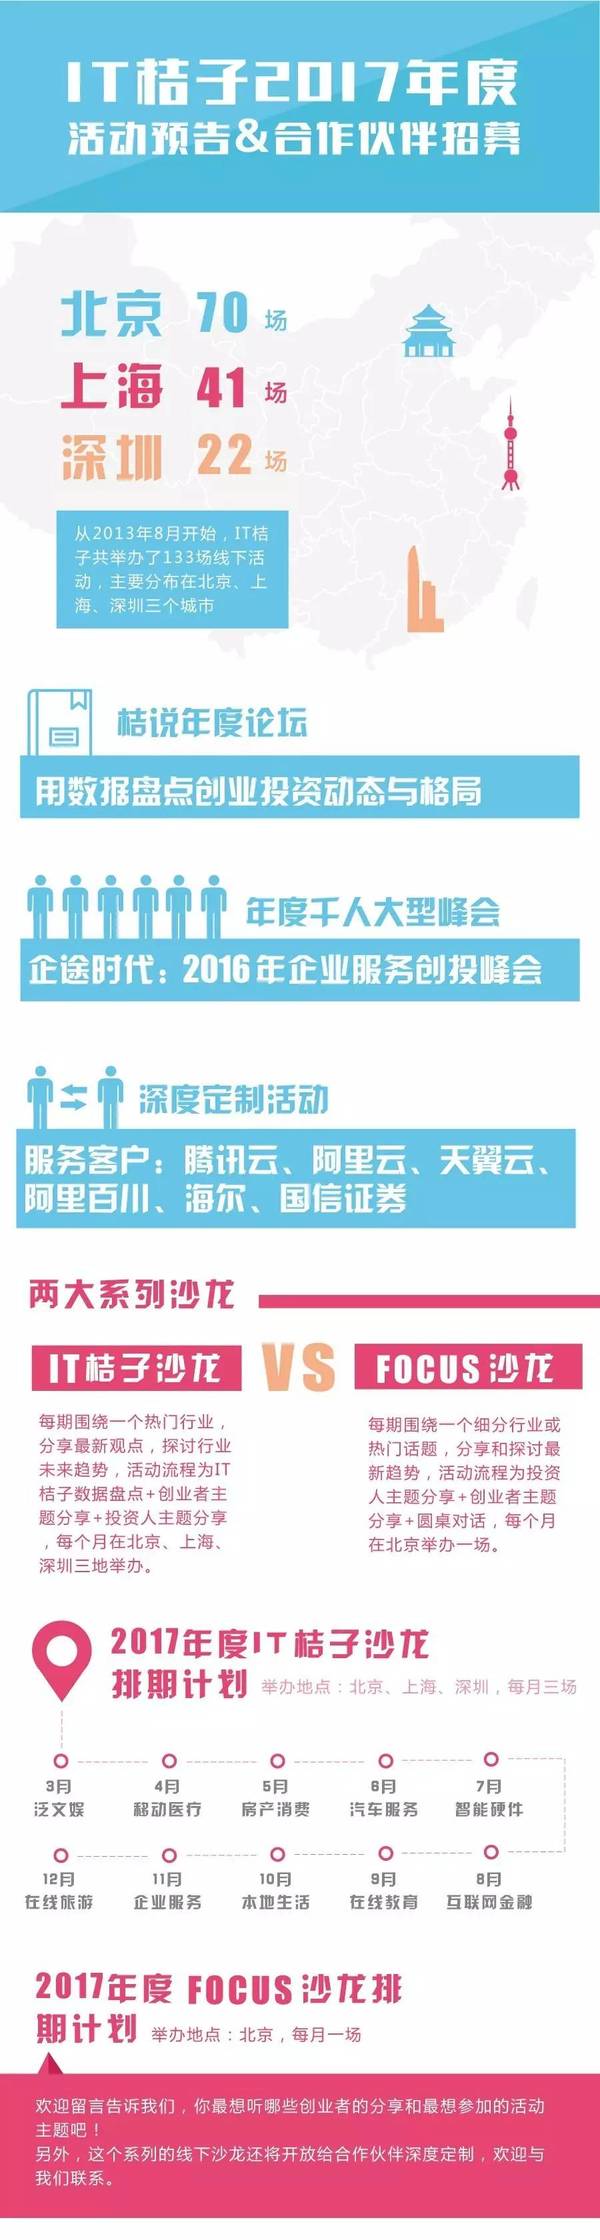 码报:【j2开奖】IT桔子2017年度活动预告合作伙伴招募